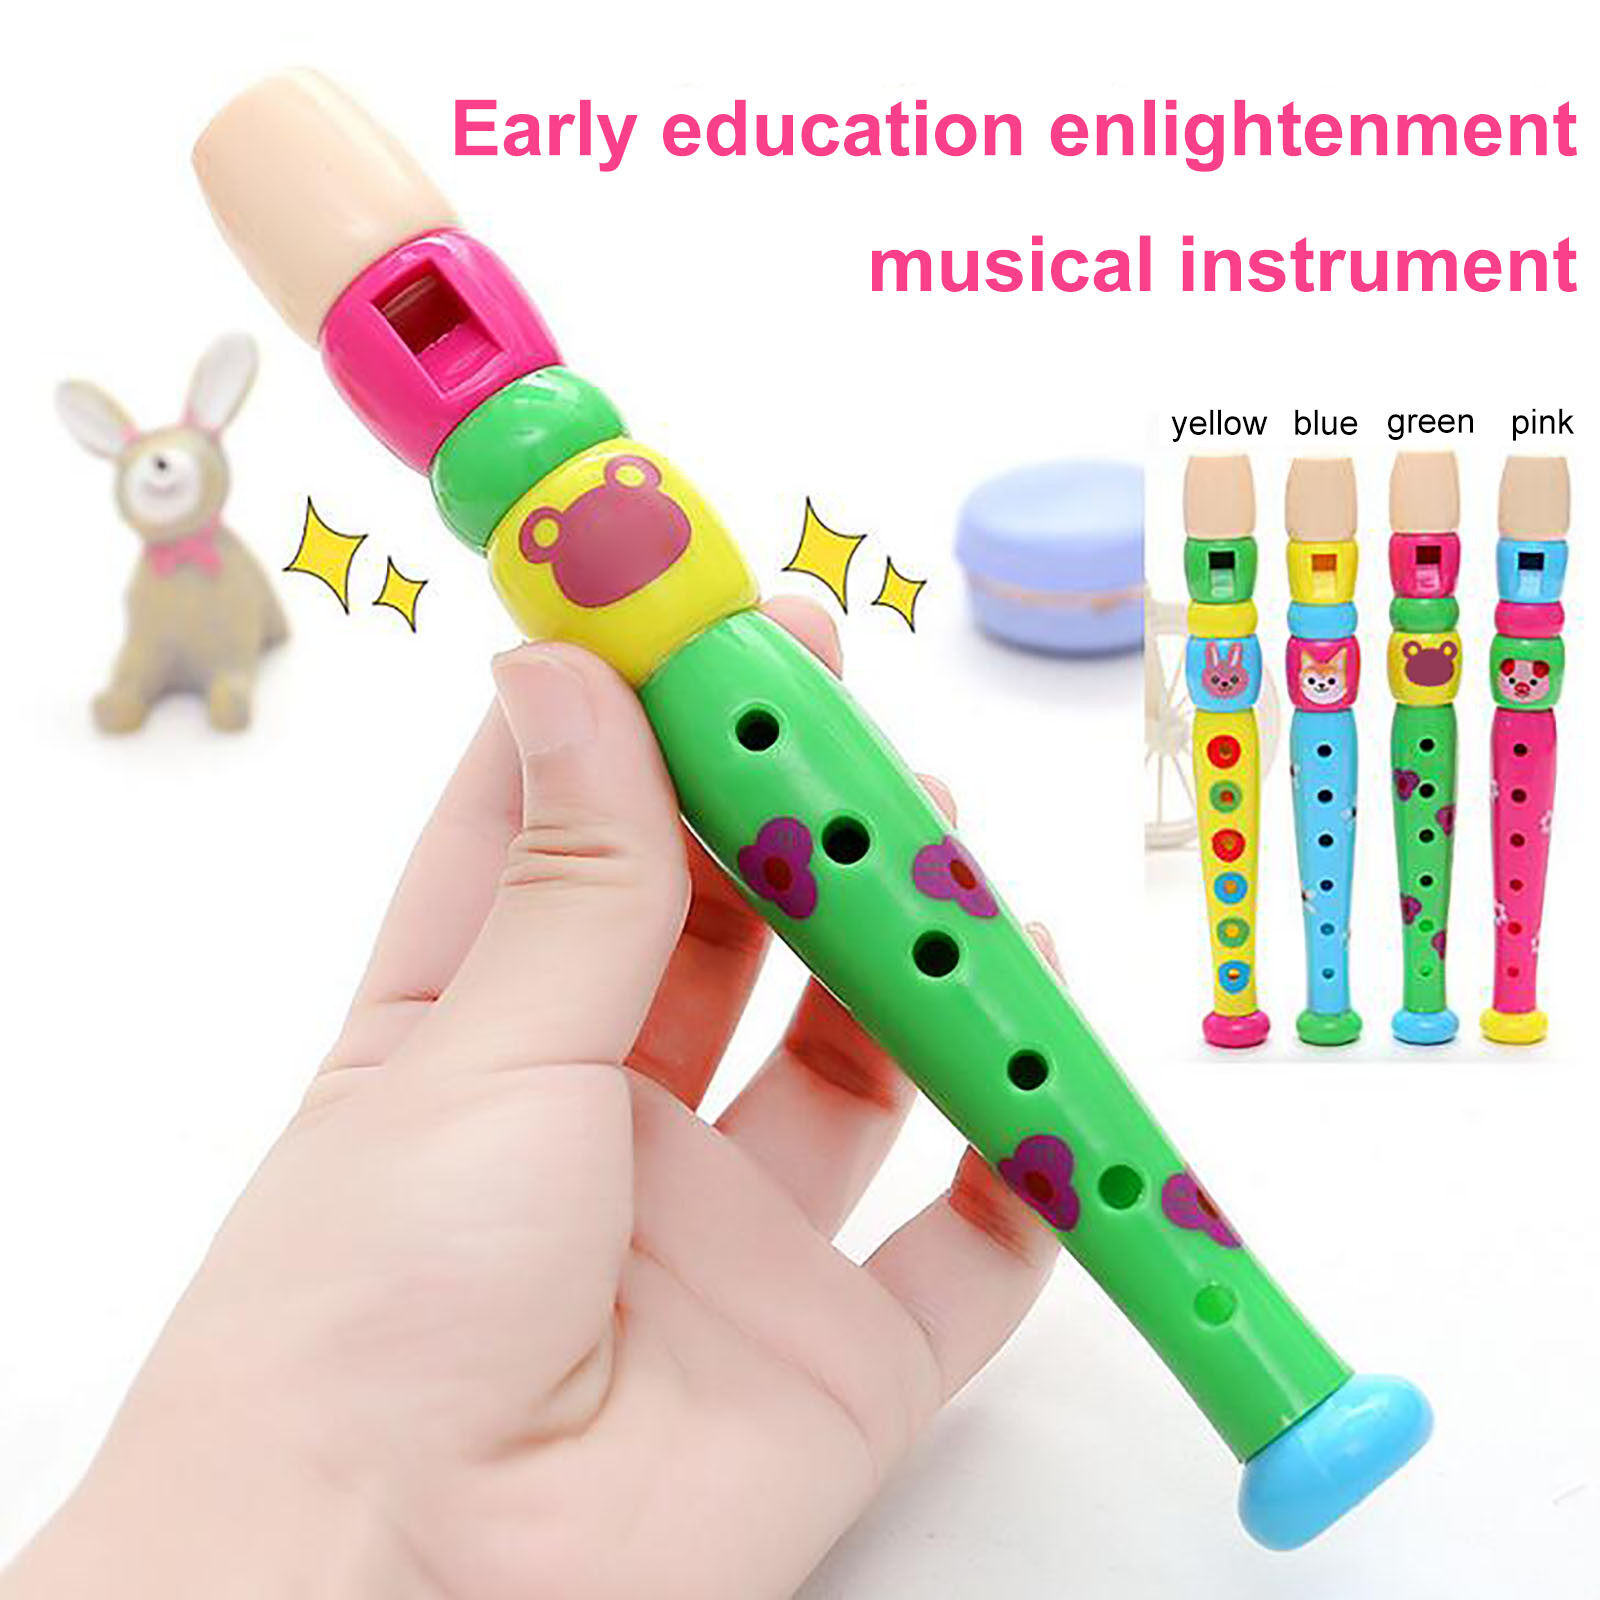 Nhựa nhỏ màu sáo người trẻ tuổi Thời thơ ấu giáo dục âm nhạc Đồ chơi học